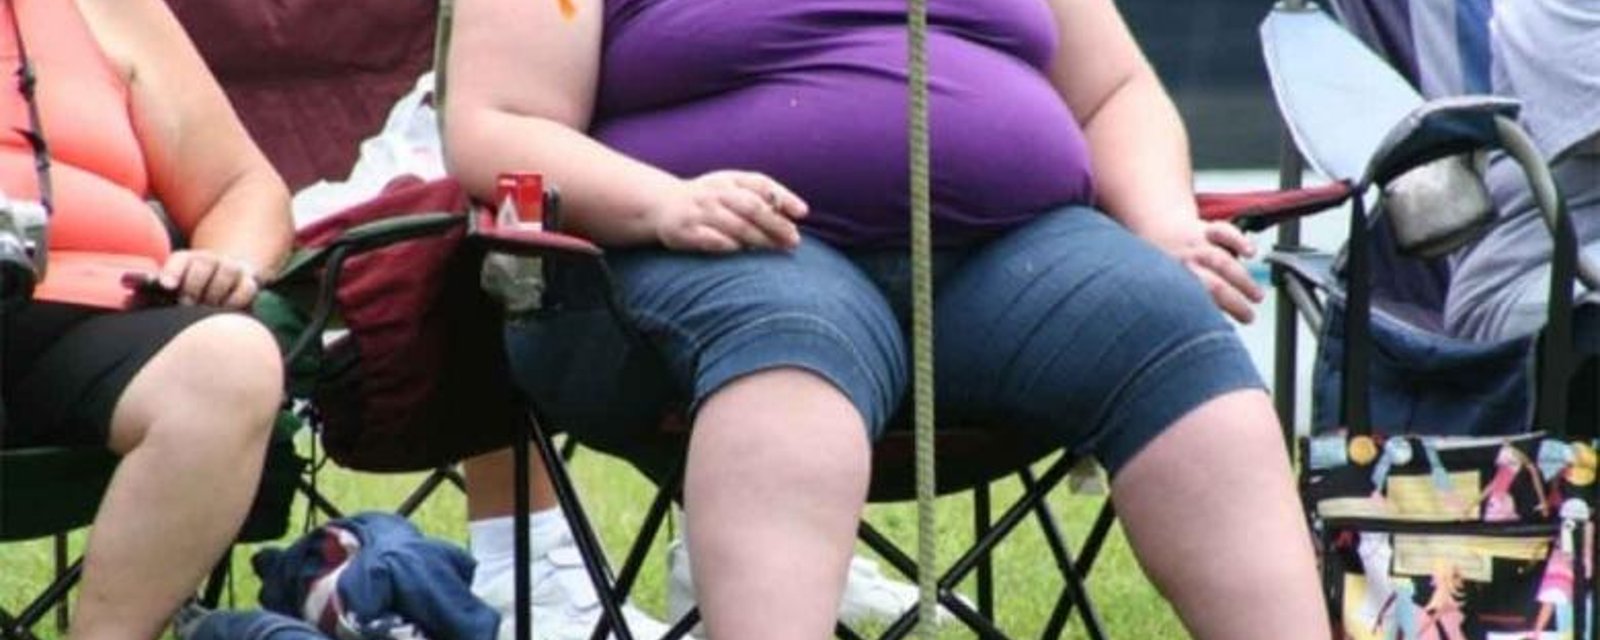 Une femme obèse s'assoit à côté de lui et il est dégoûté... Mais il aura toute une leçon!